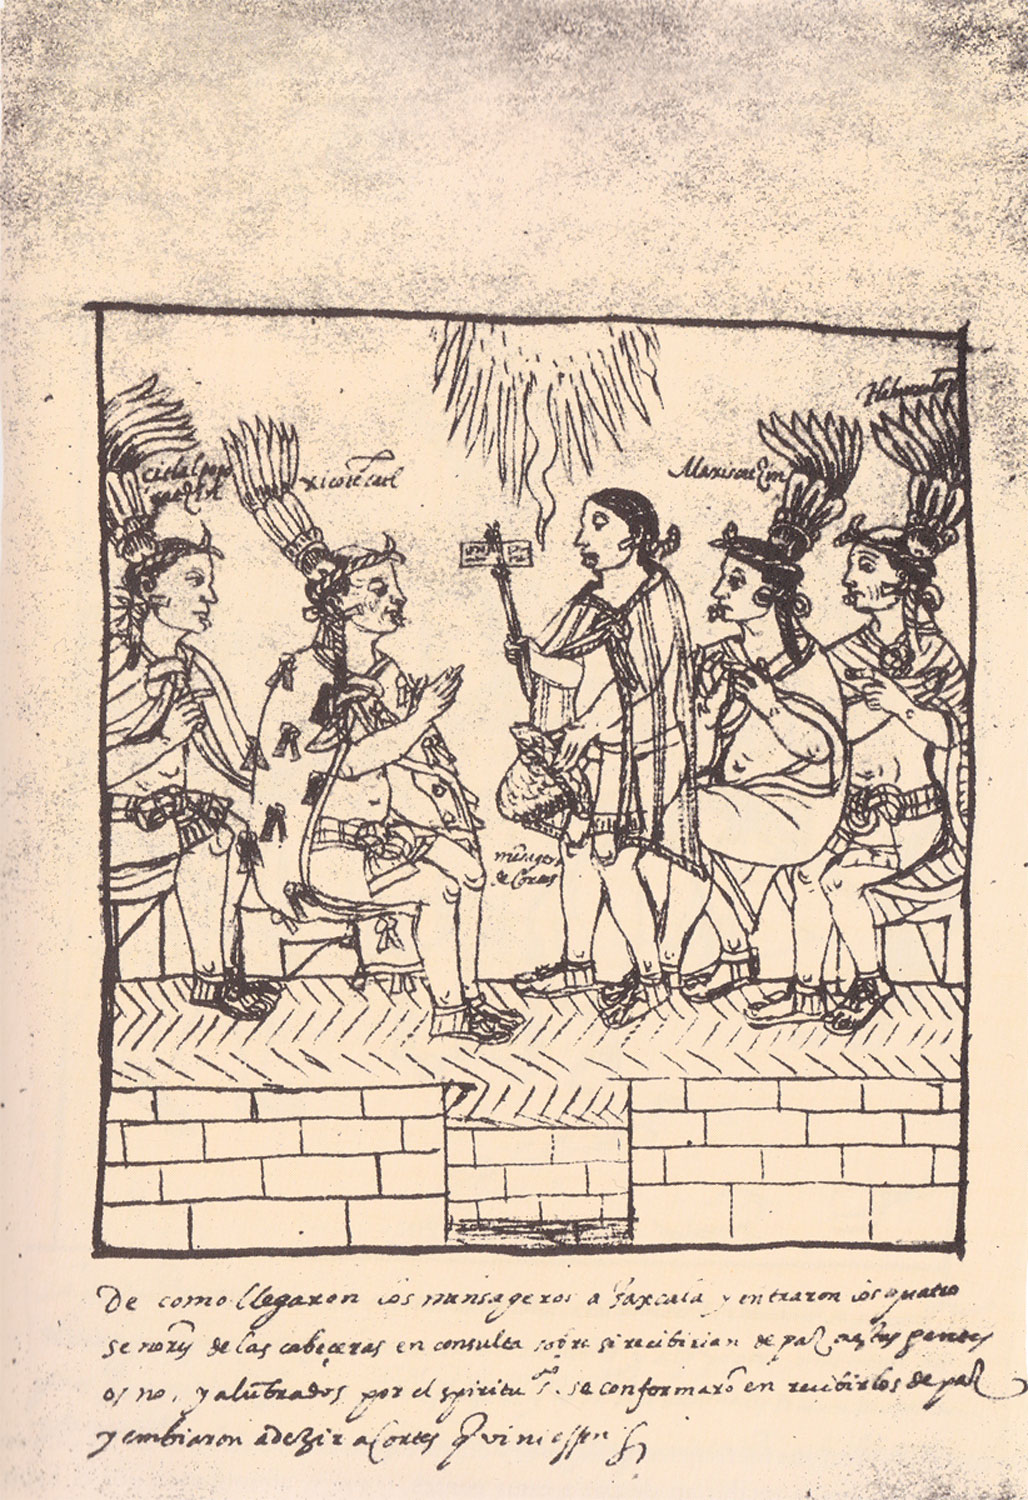 Mensajero de Cortés con los caciques de Tlaxcala, en  Diego Muñoz Camargo, Descripción de la ciudad y provincia de Tlaxcala, Lám. 28. Anónimo. ca. 1580